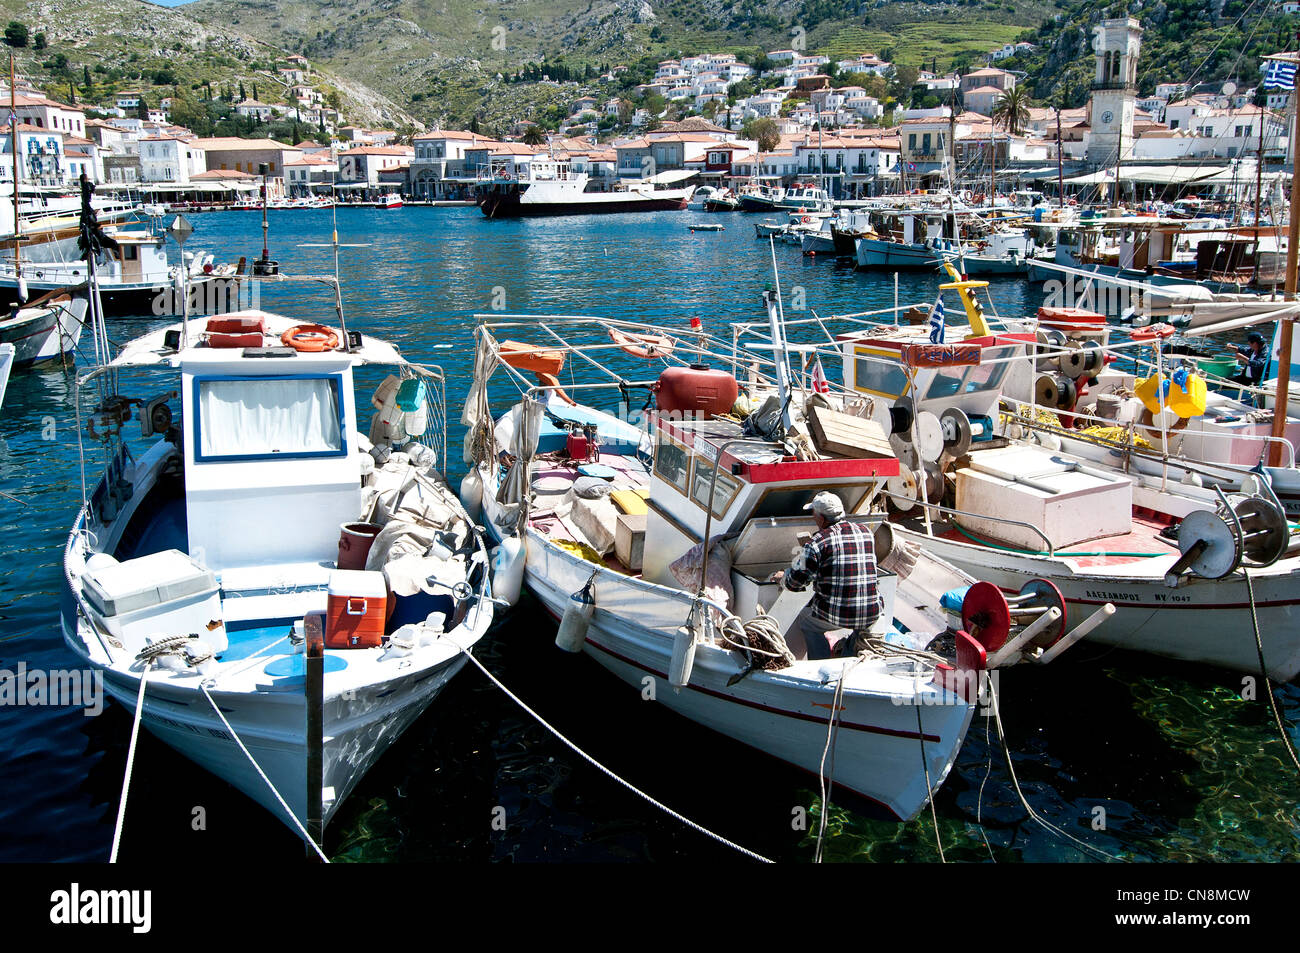 L'île d'Hydra - Grèce, port avec des bateaux de pêcheurs traditionnels Banque D'Images